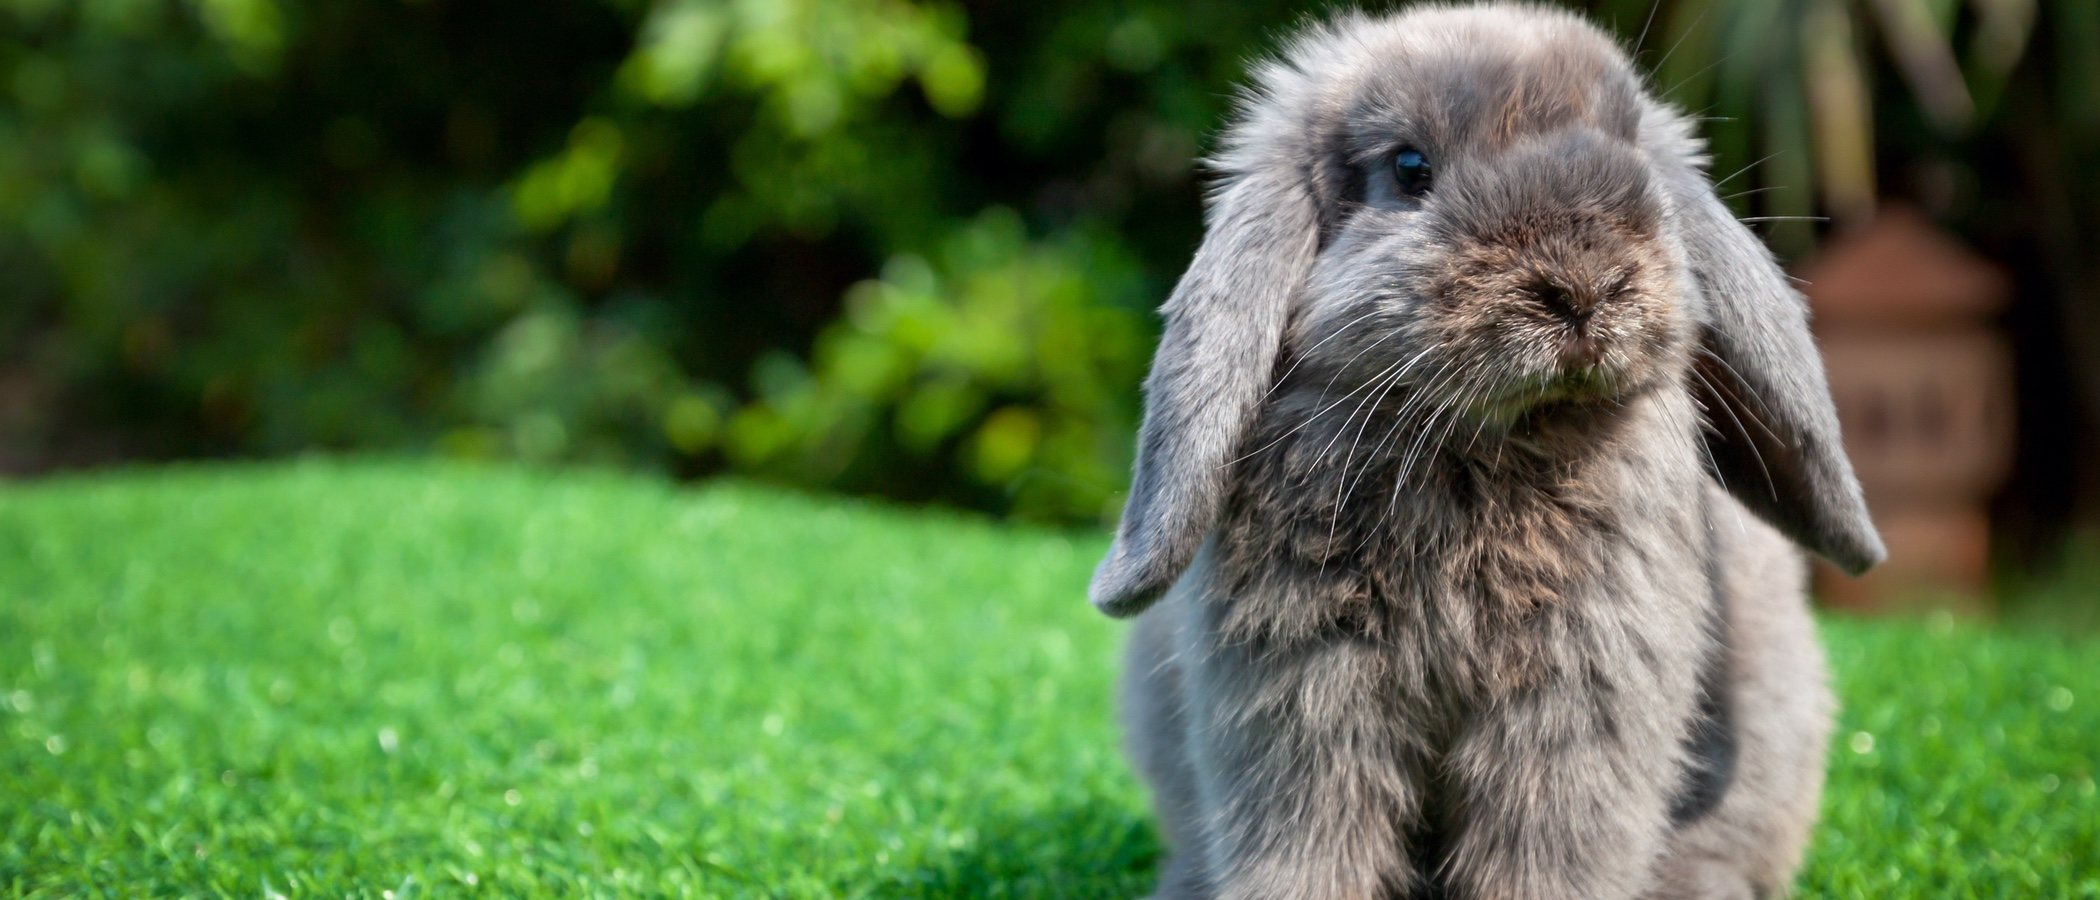 Conejos: la muda de pelo